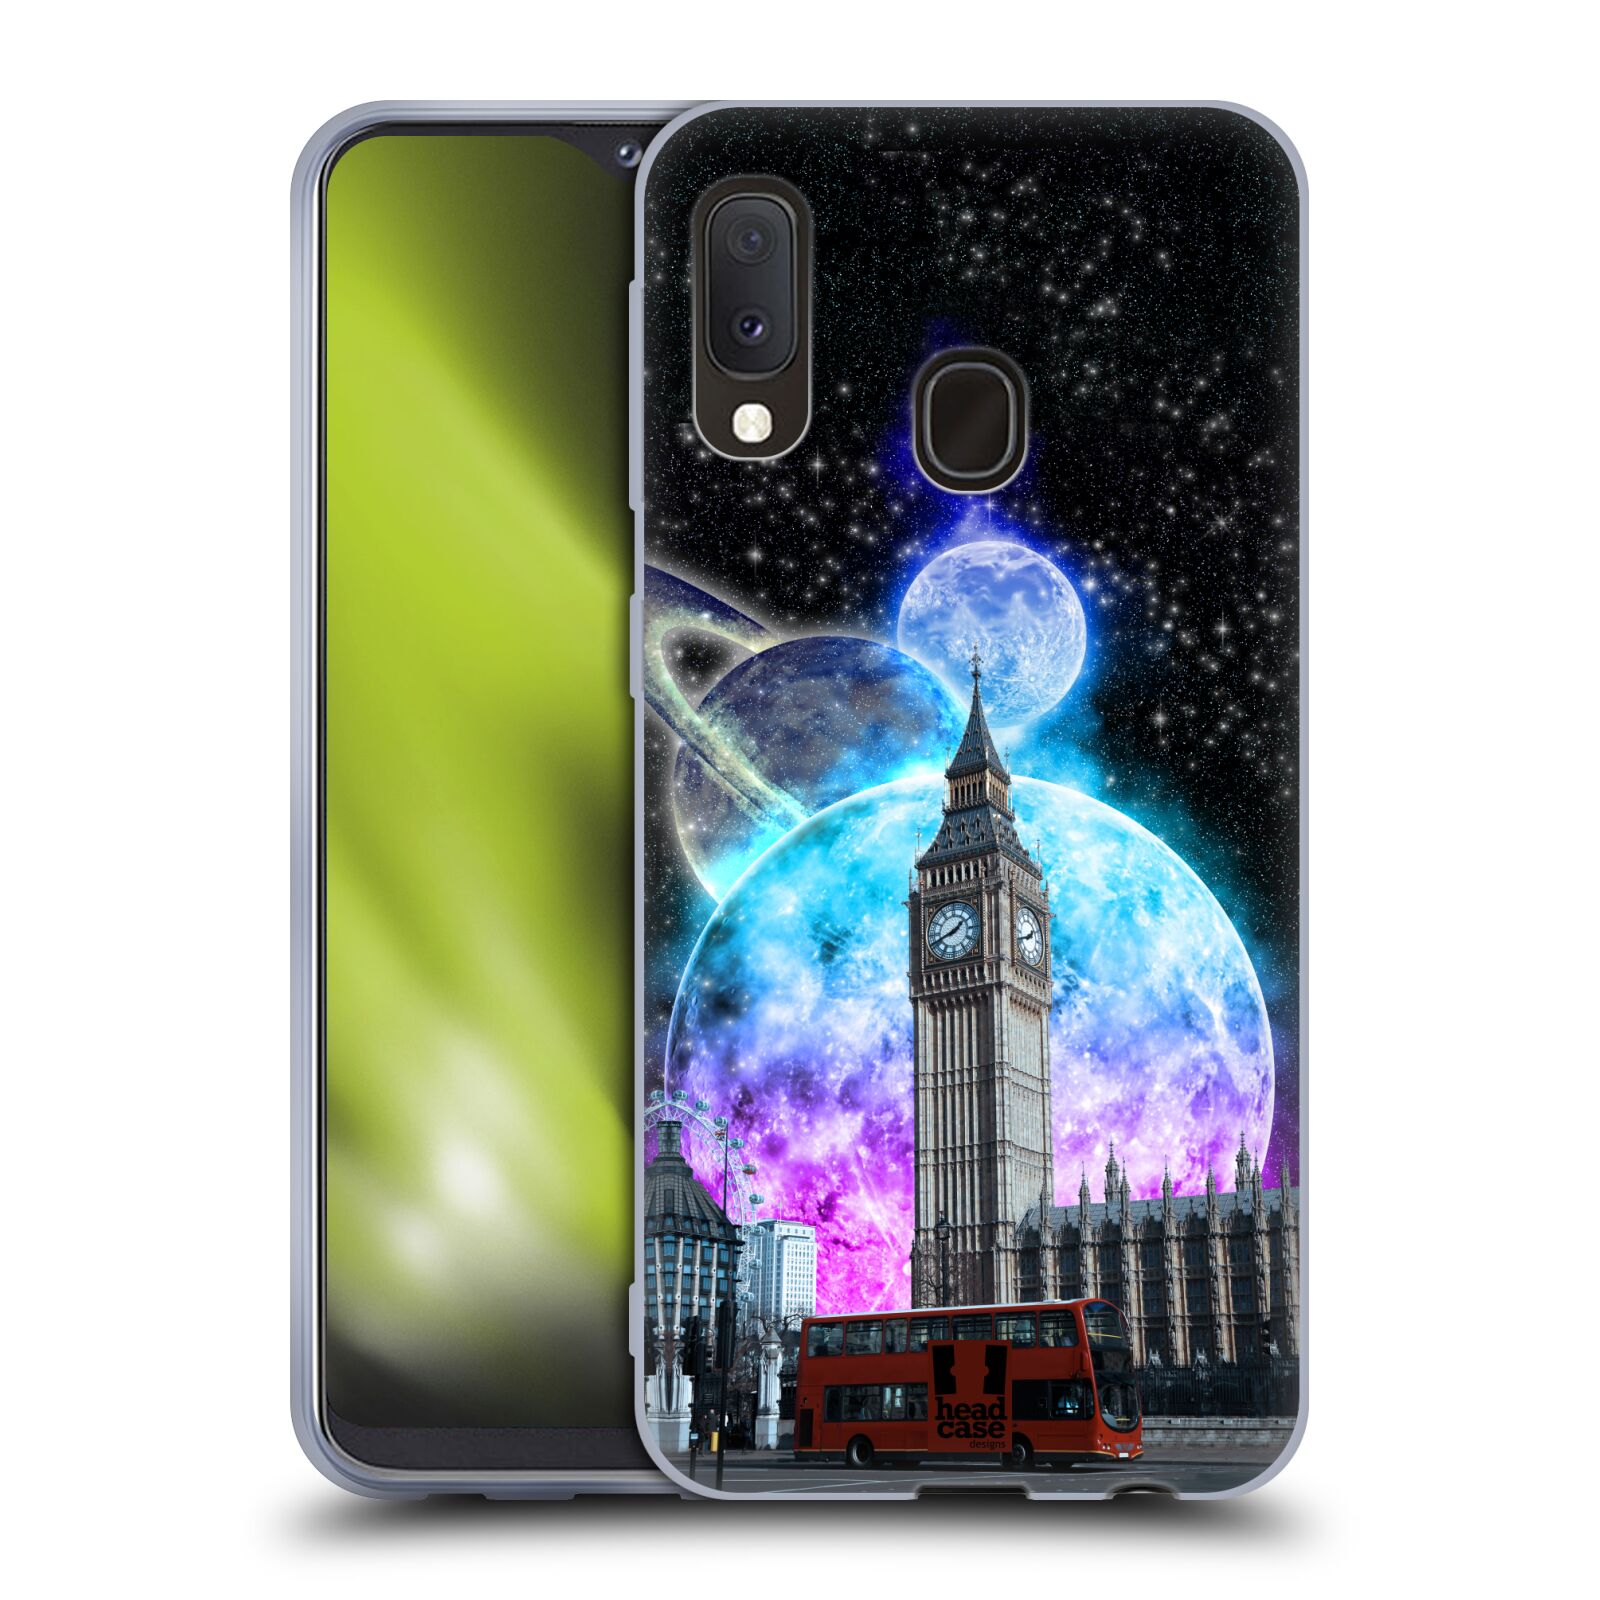 Silikonové pouzdro na mobil Samsung Galaxy A20e - Head Case - Měsíční Londýn (Silikonový kryt, obal, pouzdro na mobilní telefon Samsung Galaxy A20e A202F Dual SIM s motivem Měsíční Londýn)